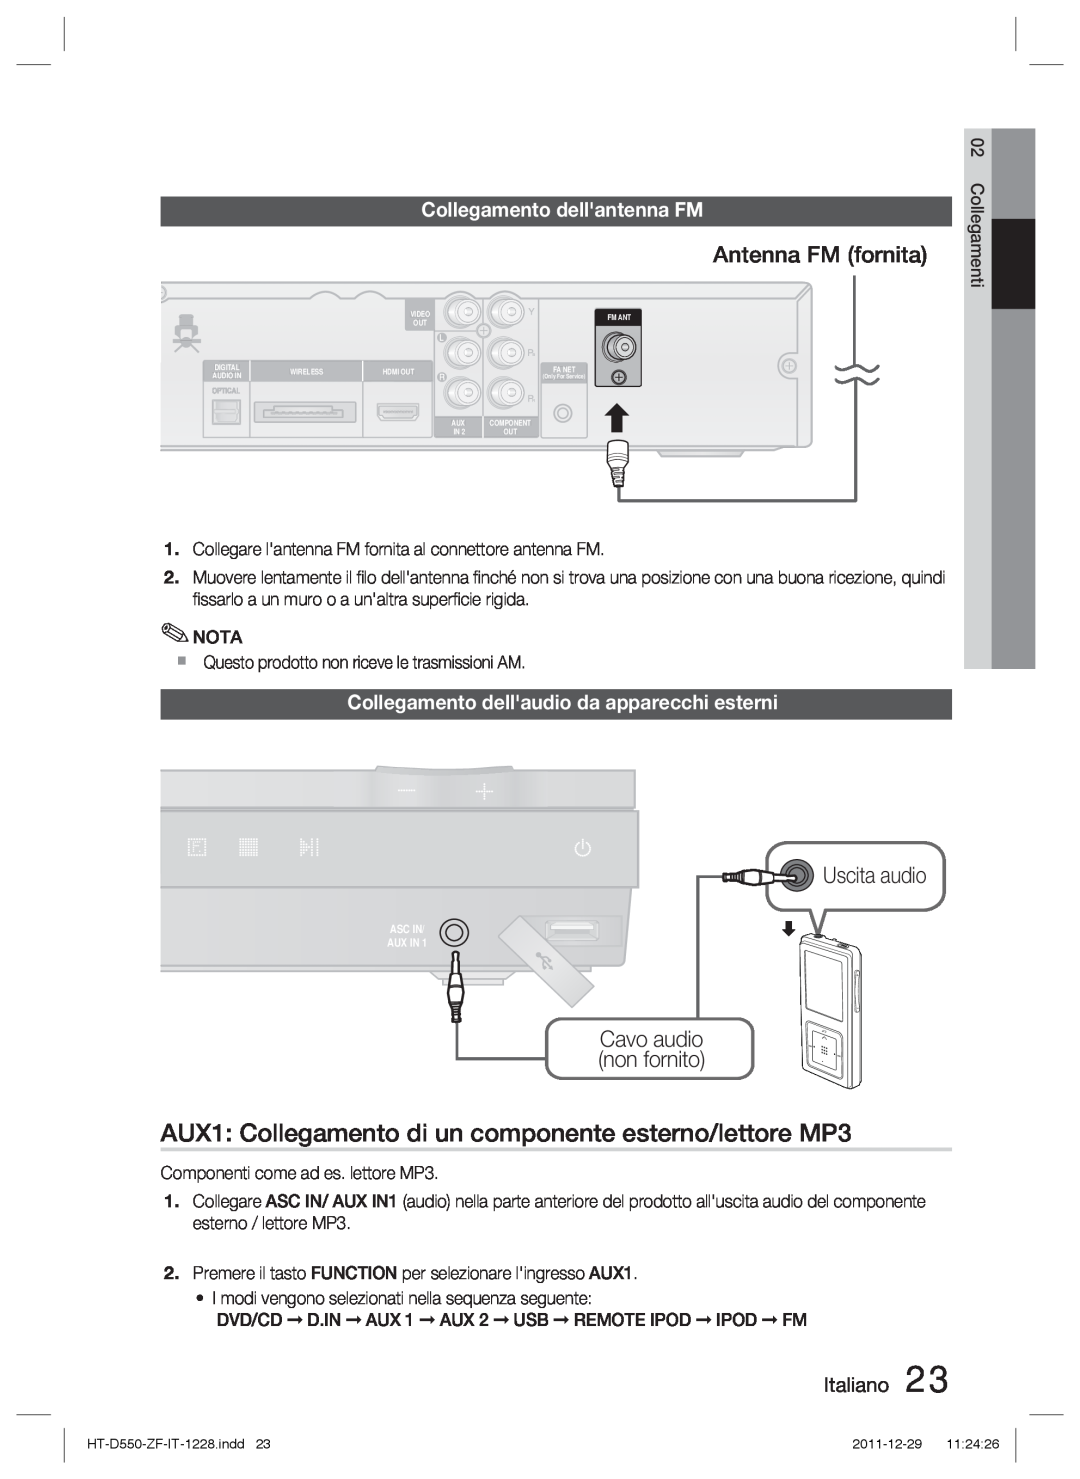 Samsung HT-D550/XN AUX1 Collegamento di un componente esterno/lettore MP3, Antenna FM fornita, Uscita audio, Italiano 